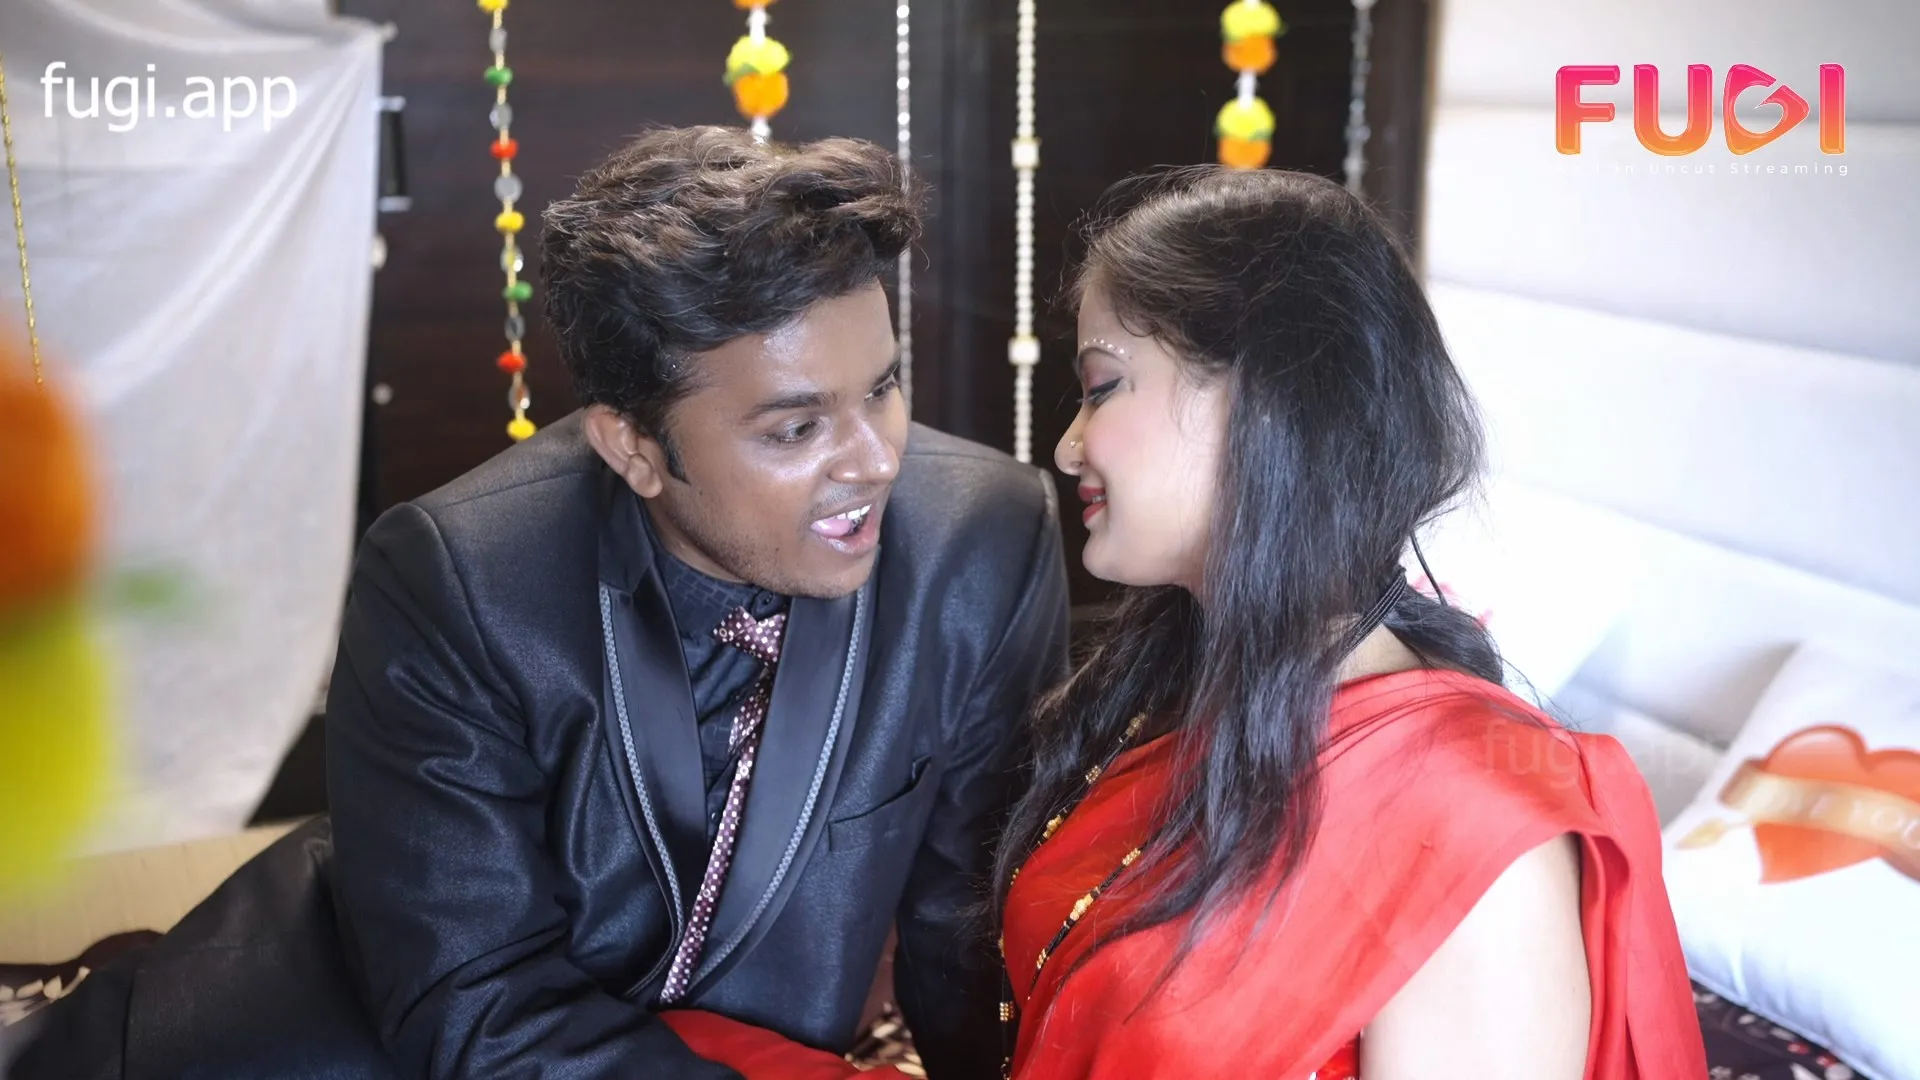 Desi Love 2023 Fugi Hindi Short Film 1080p HDRip 700MB Download